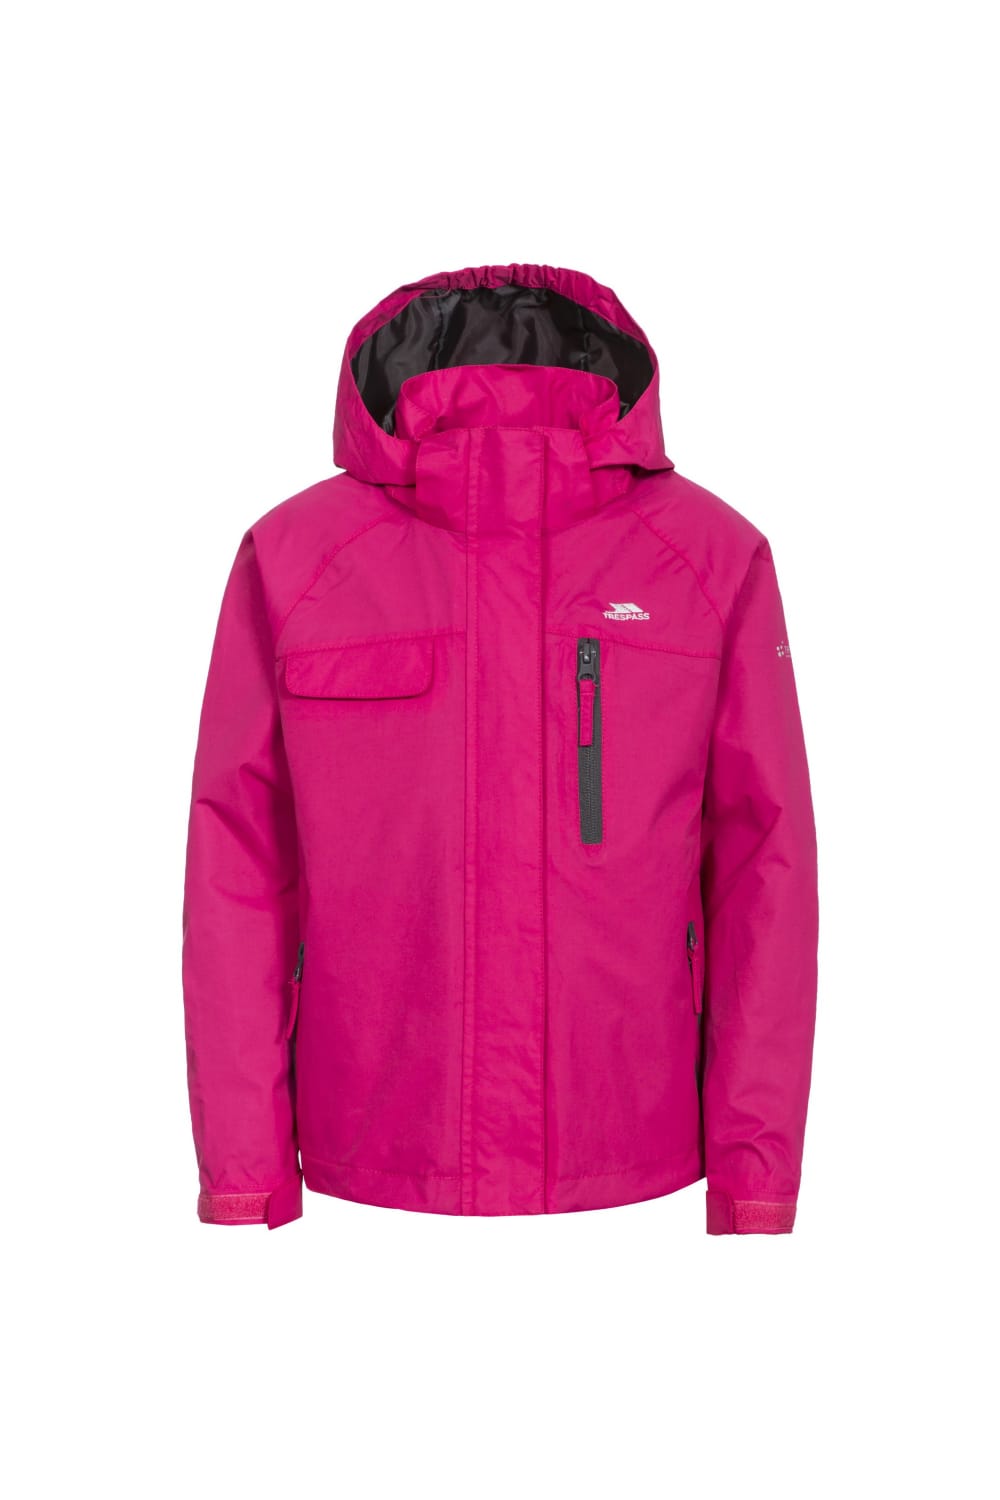 Trespass Childrens/Kids Vivir Waterproof Jacket (Pink Lady)